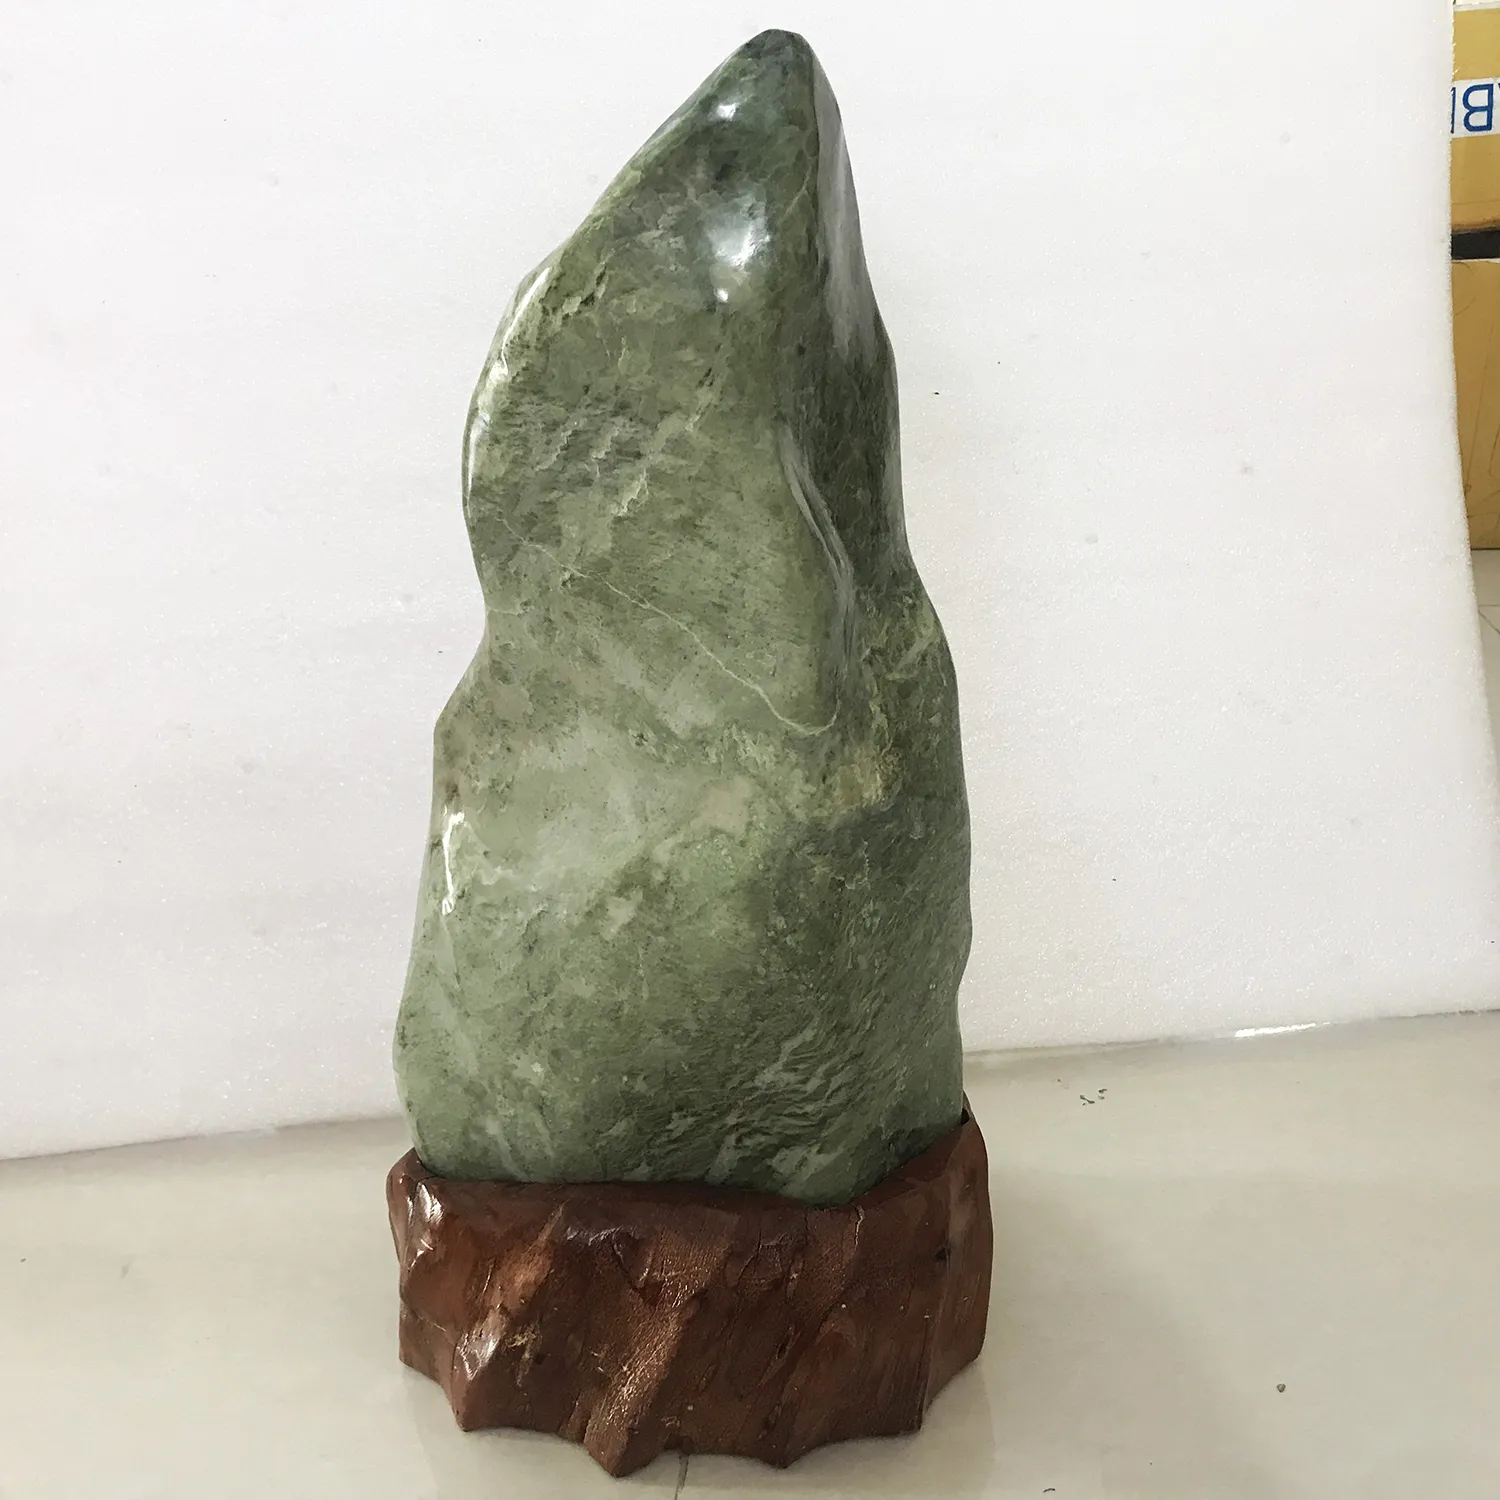 [HCM]Cây đá, trụ đá, đá tự nhiên màu xanh lá cao 55 cm nặng 28 kg cho người mệnh Hỏa và Mộc